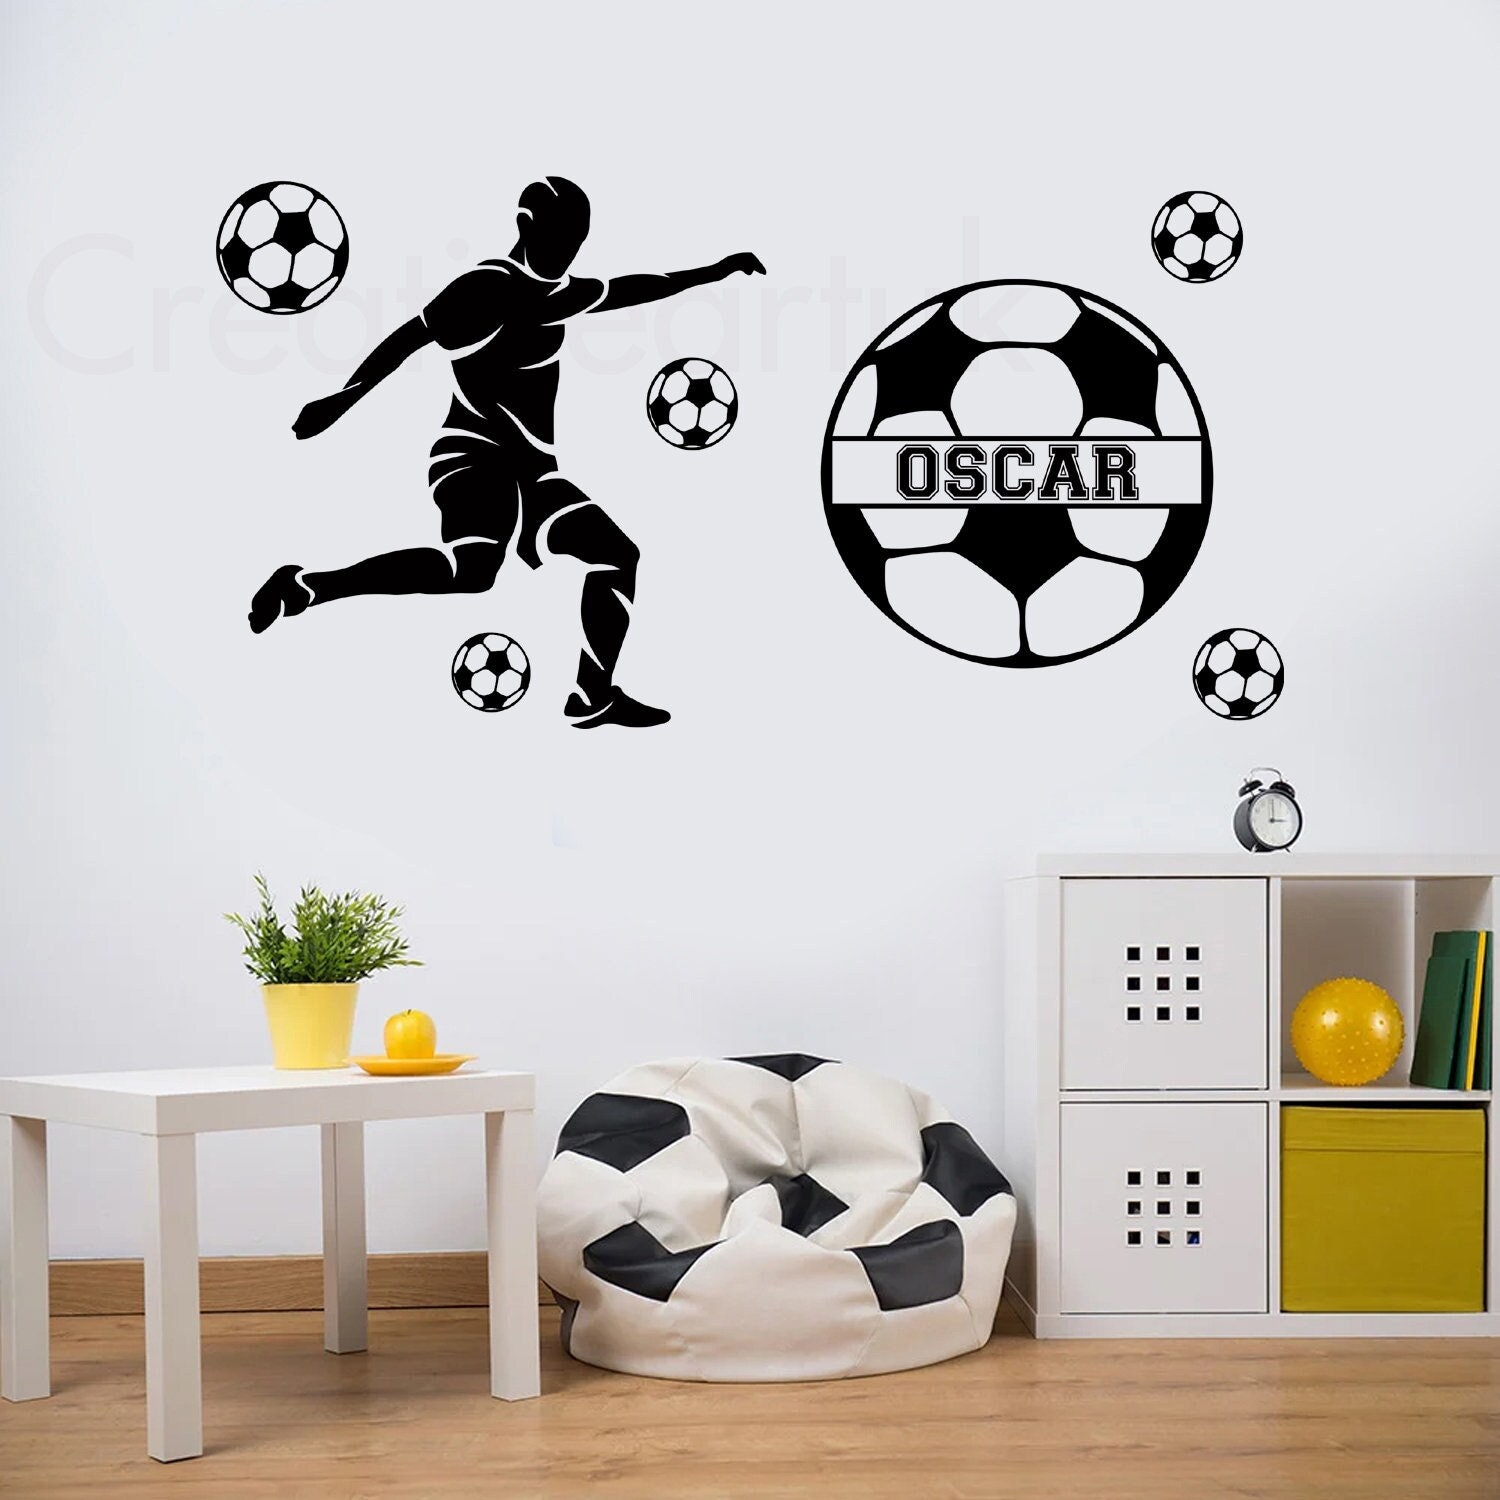 Adesivi murali calciatore personalizzato, per decorare la cameretta